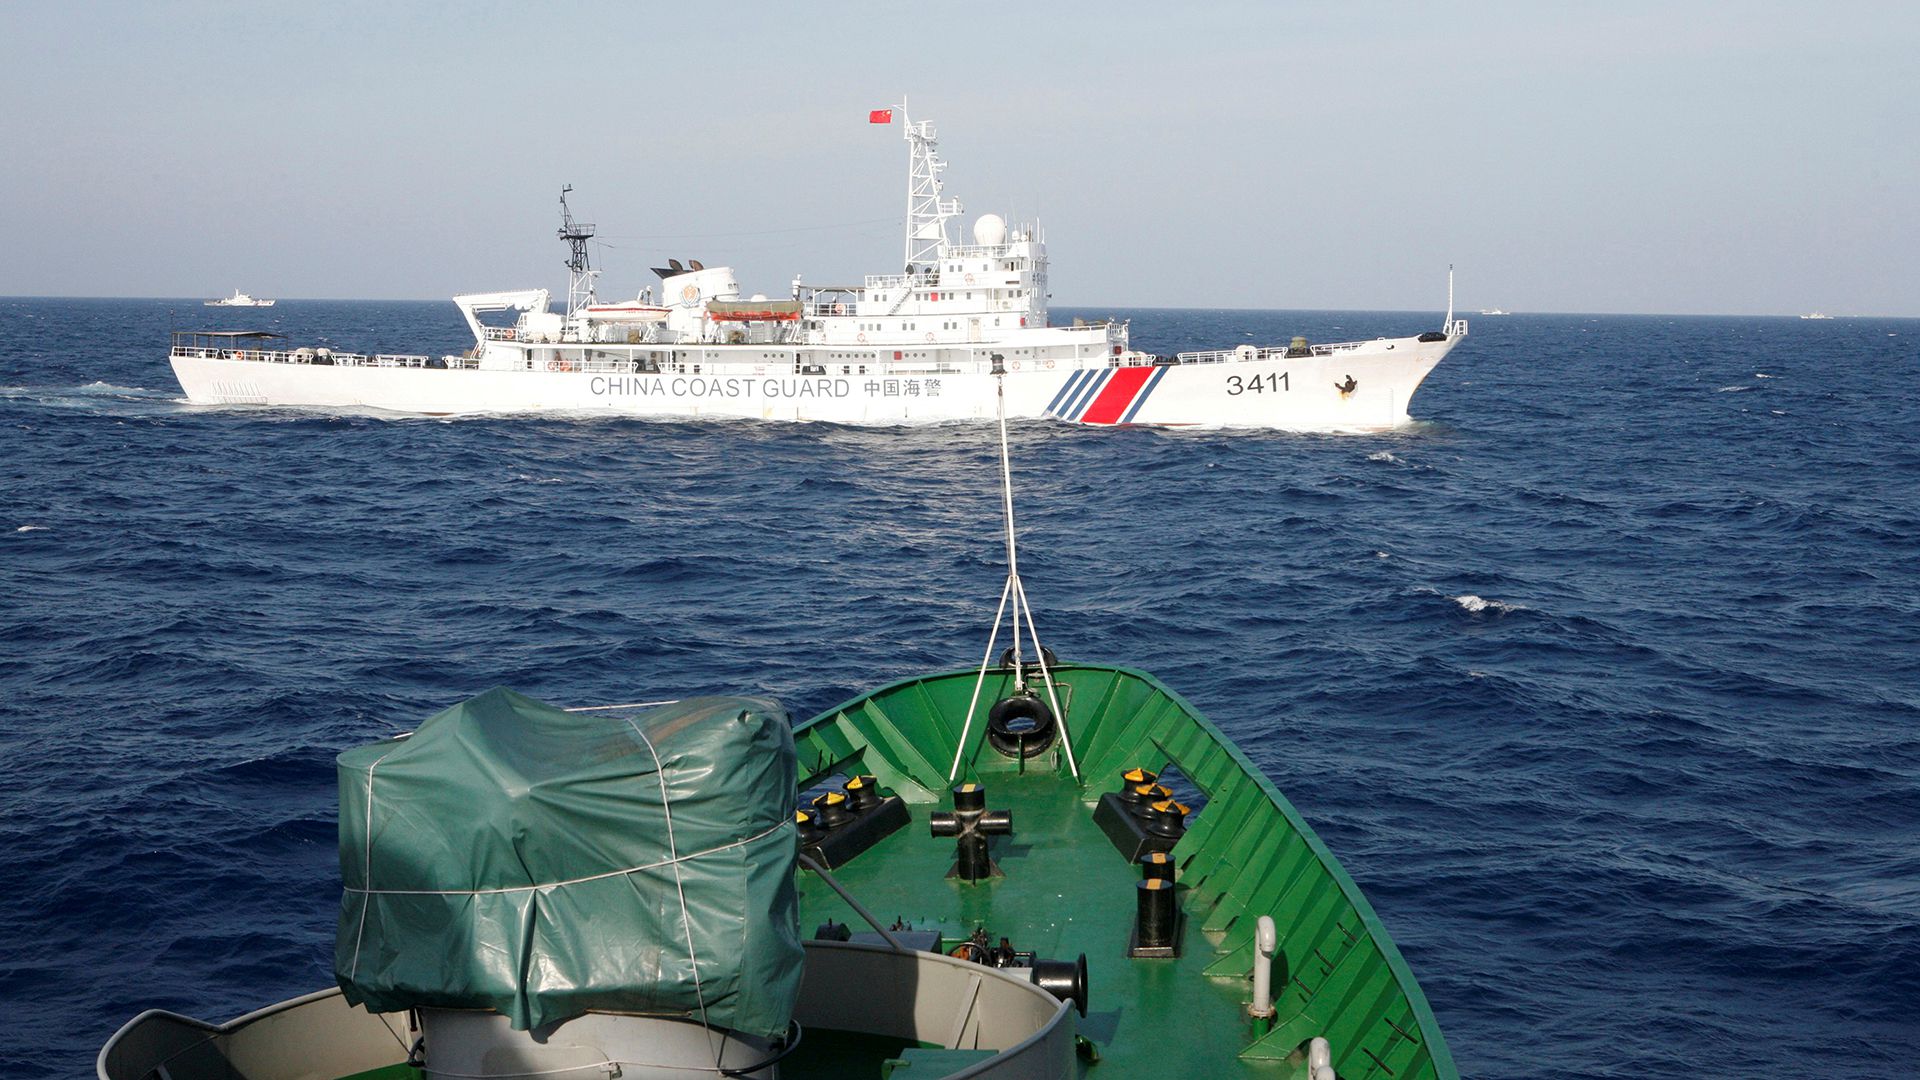 Un barco de la guardia costera china cerca de uno de la marina vietanamita. Ambos países comunistas son los que más choques han tenido en el Mar de China. (Reuters)